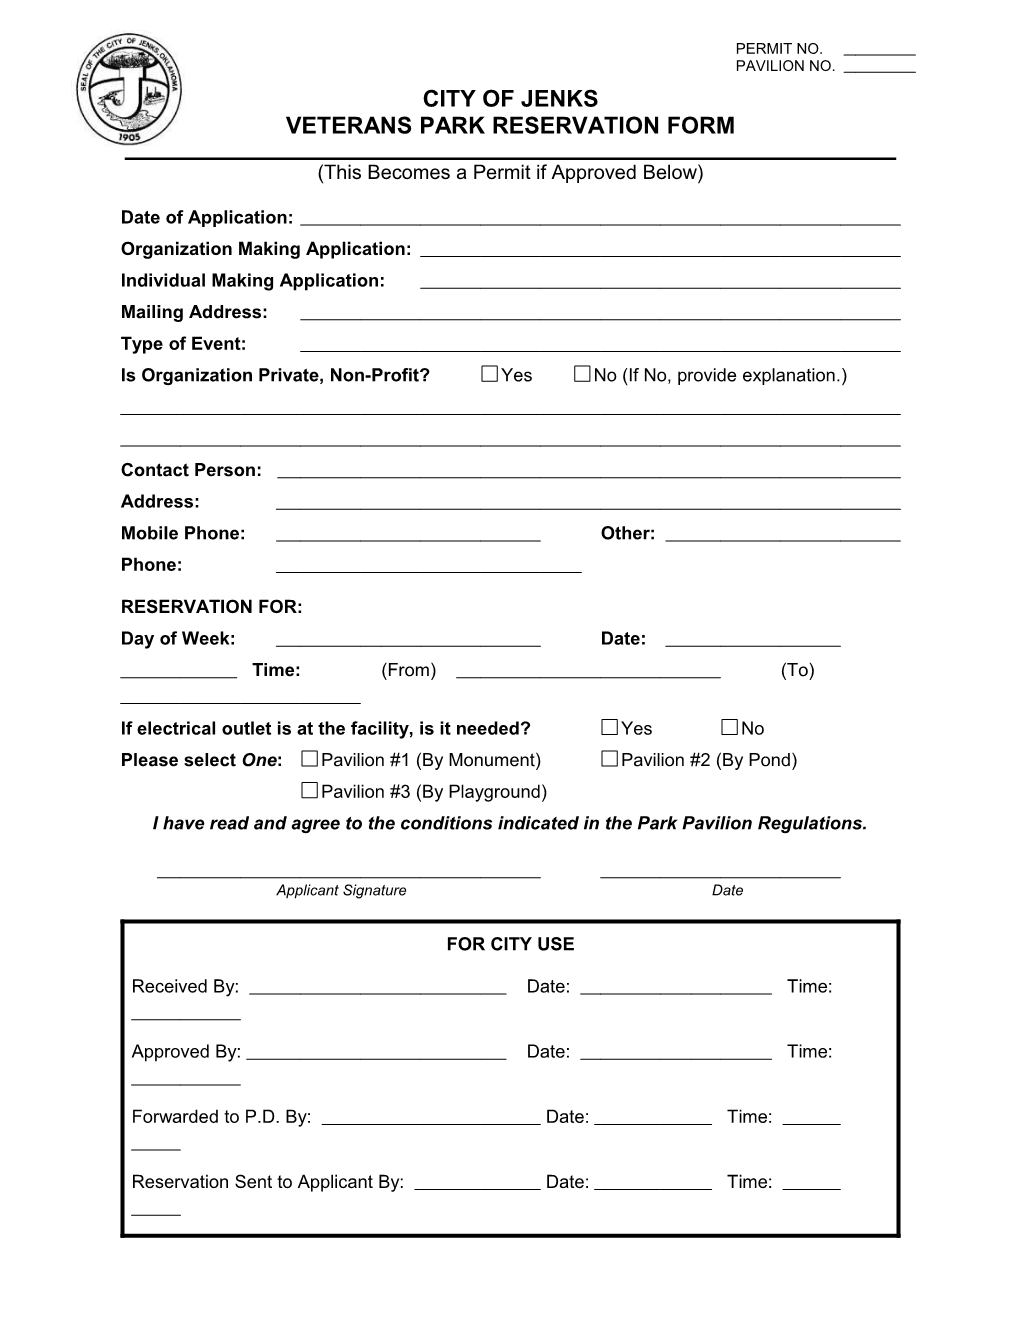 Veterans Park Reservation Form